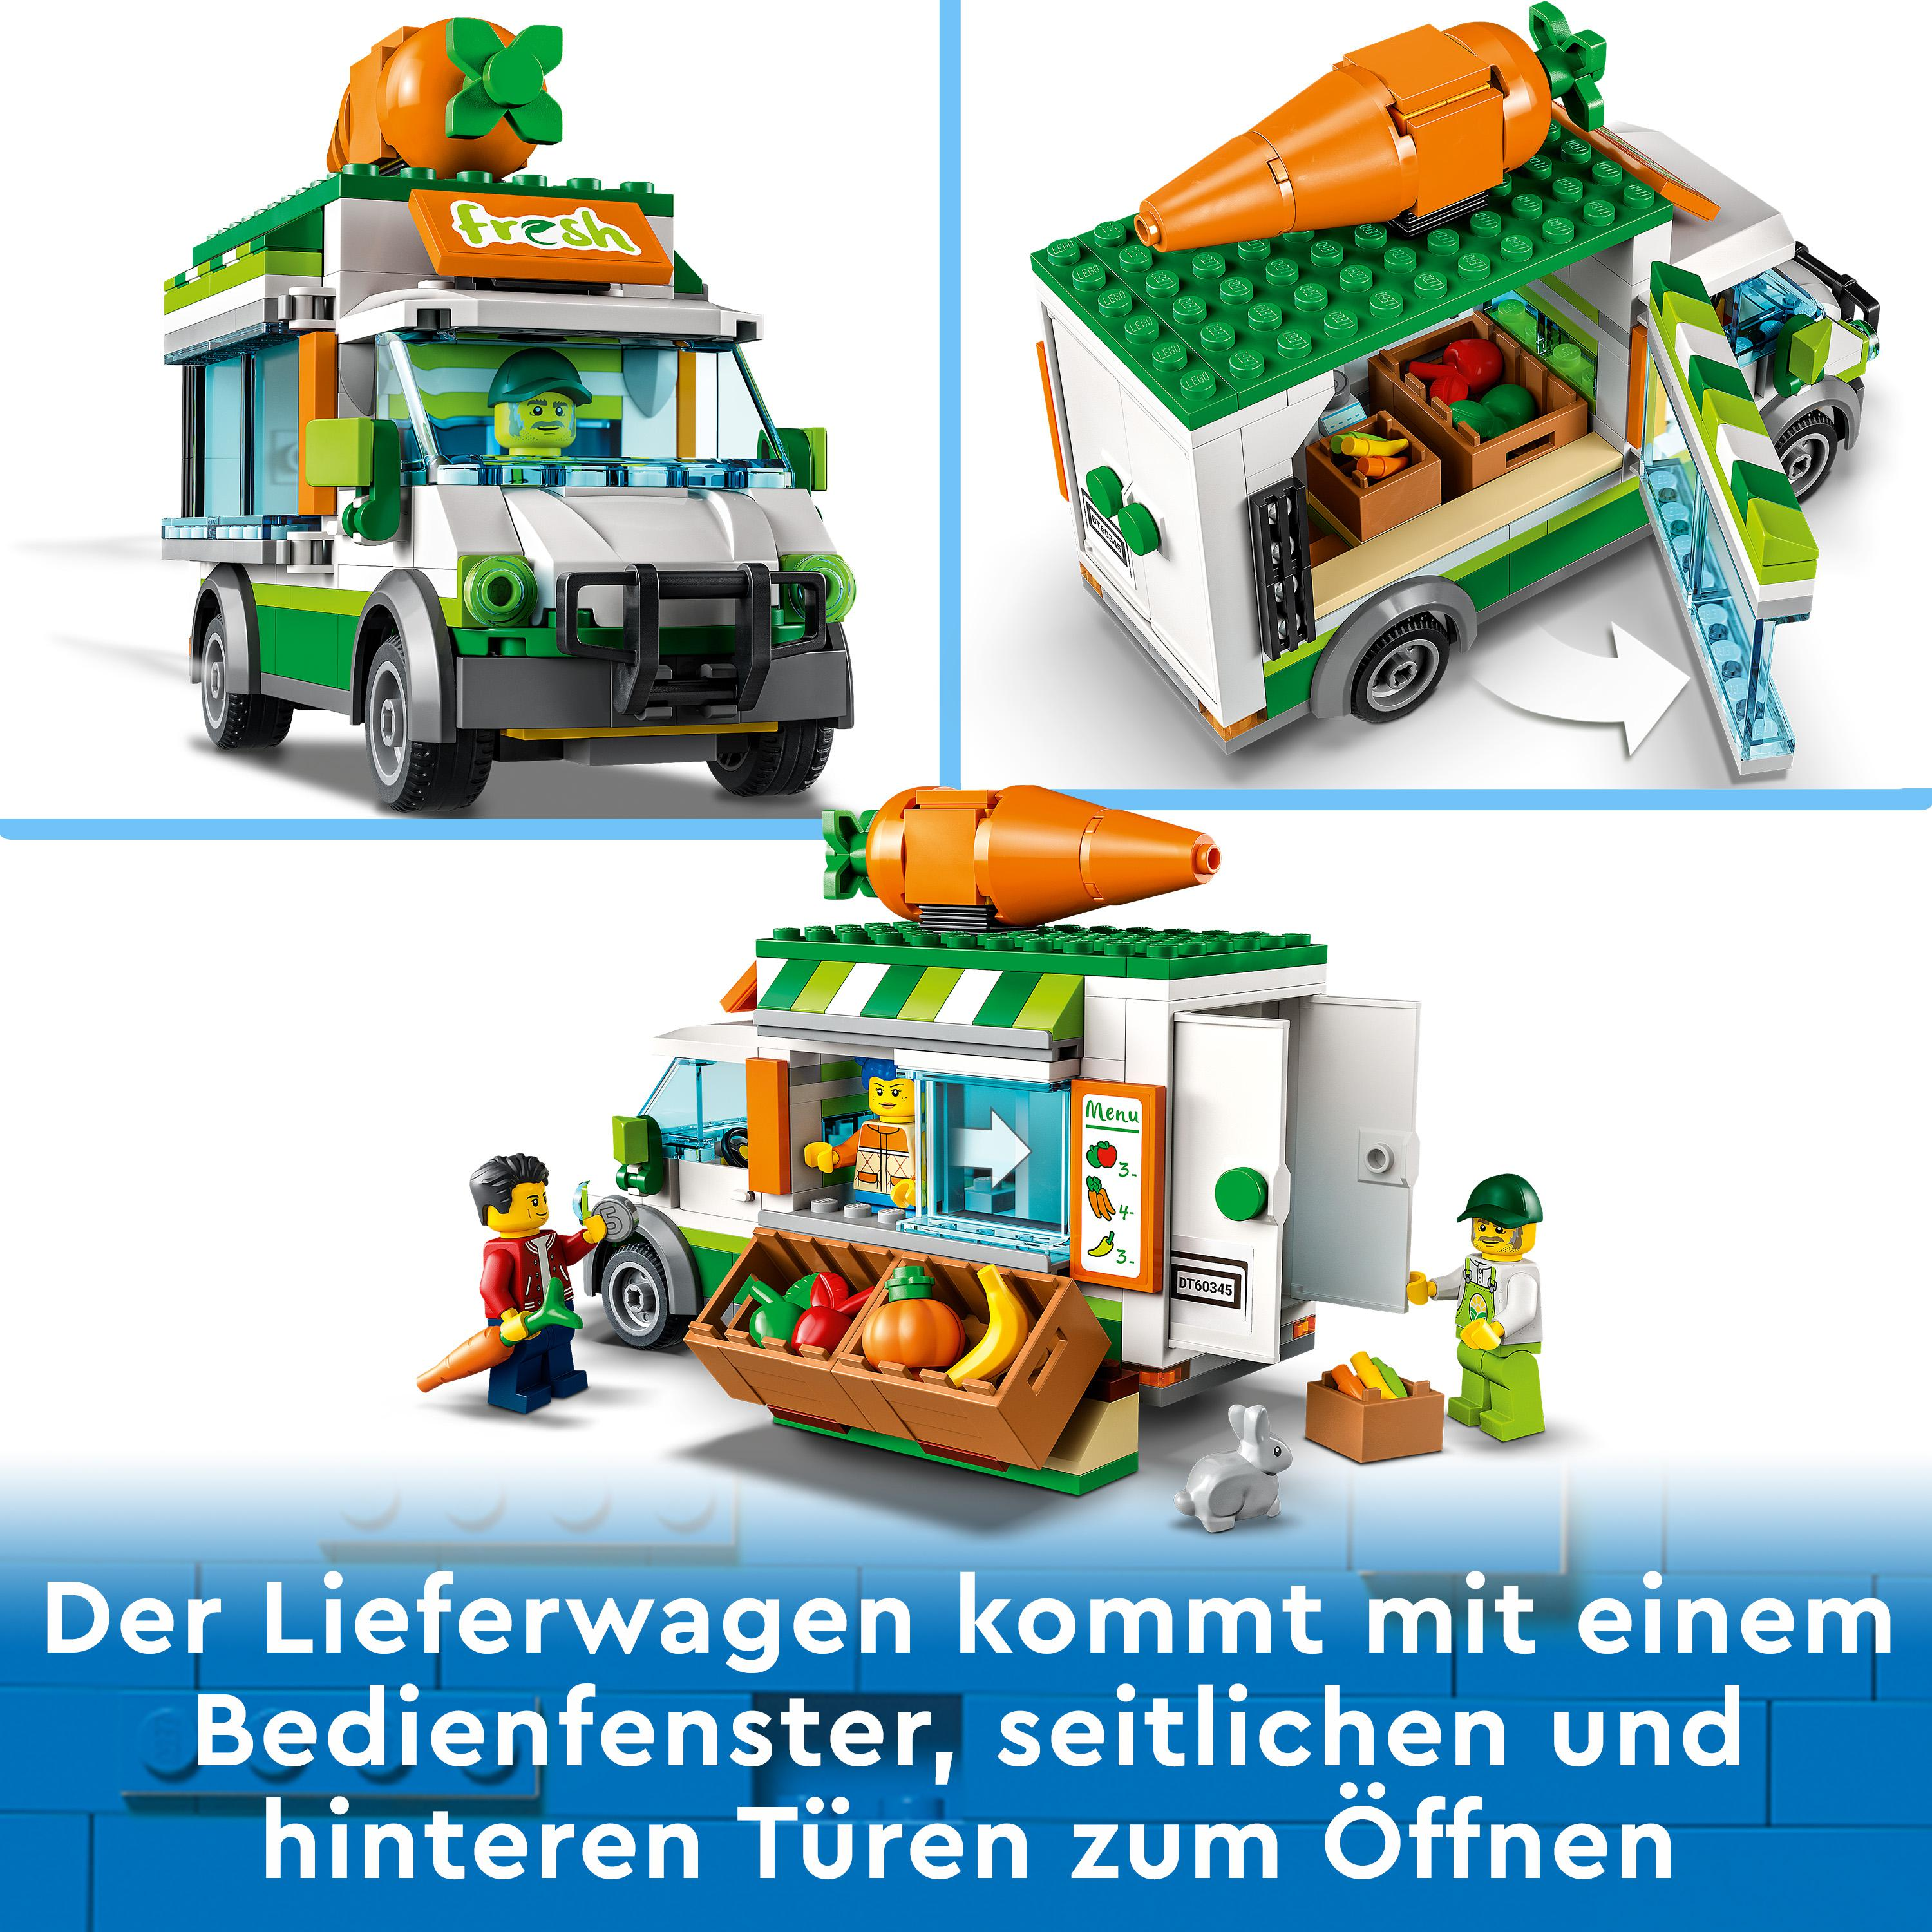 LEGO 60345 Mehrfarbig Bausatz, Gemüse-Lieferwagen City